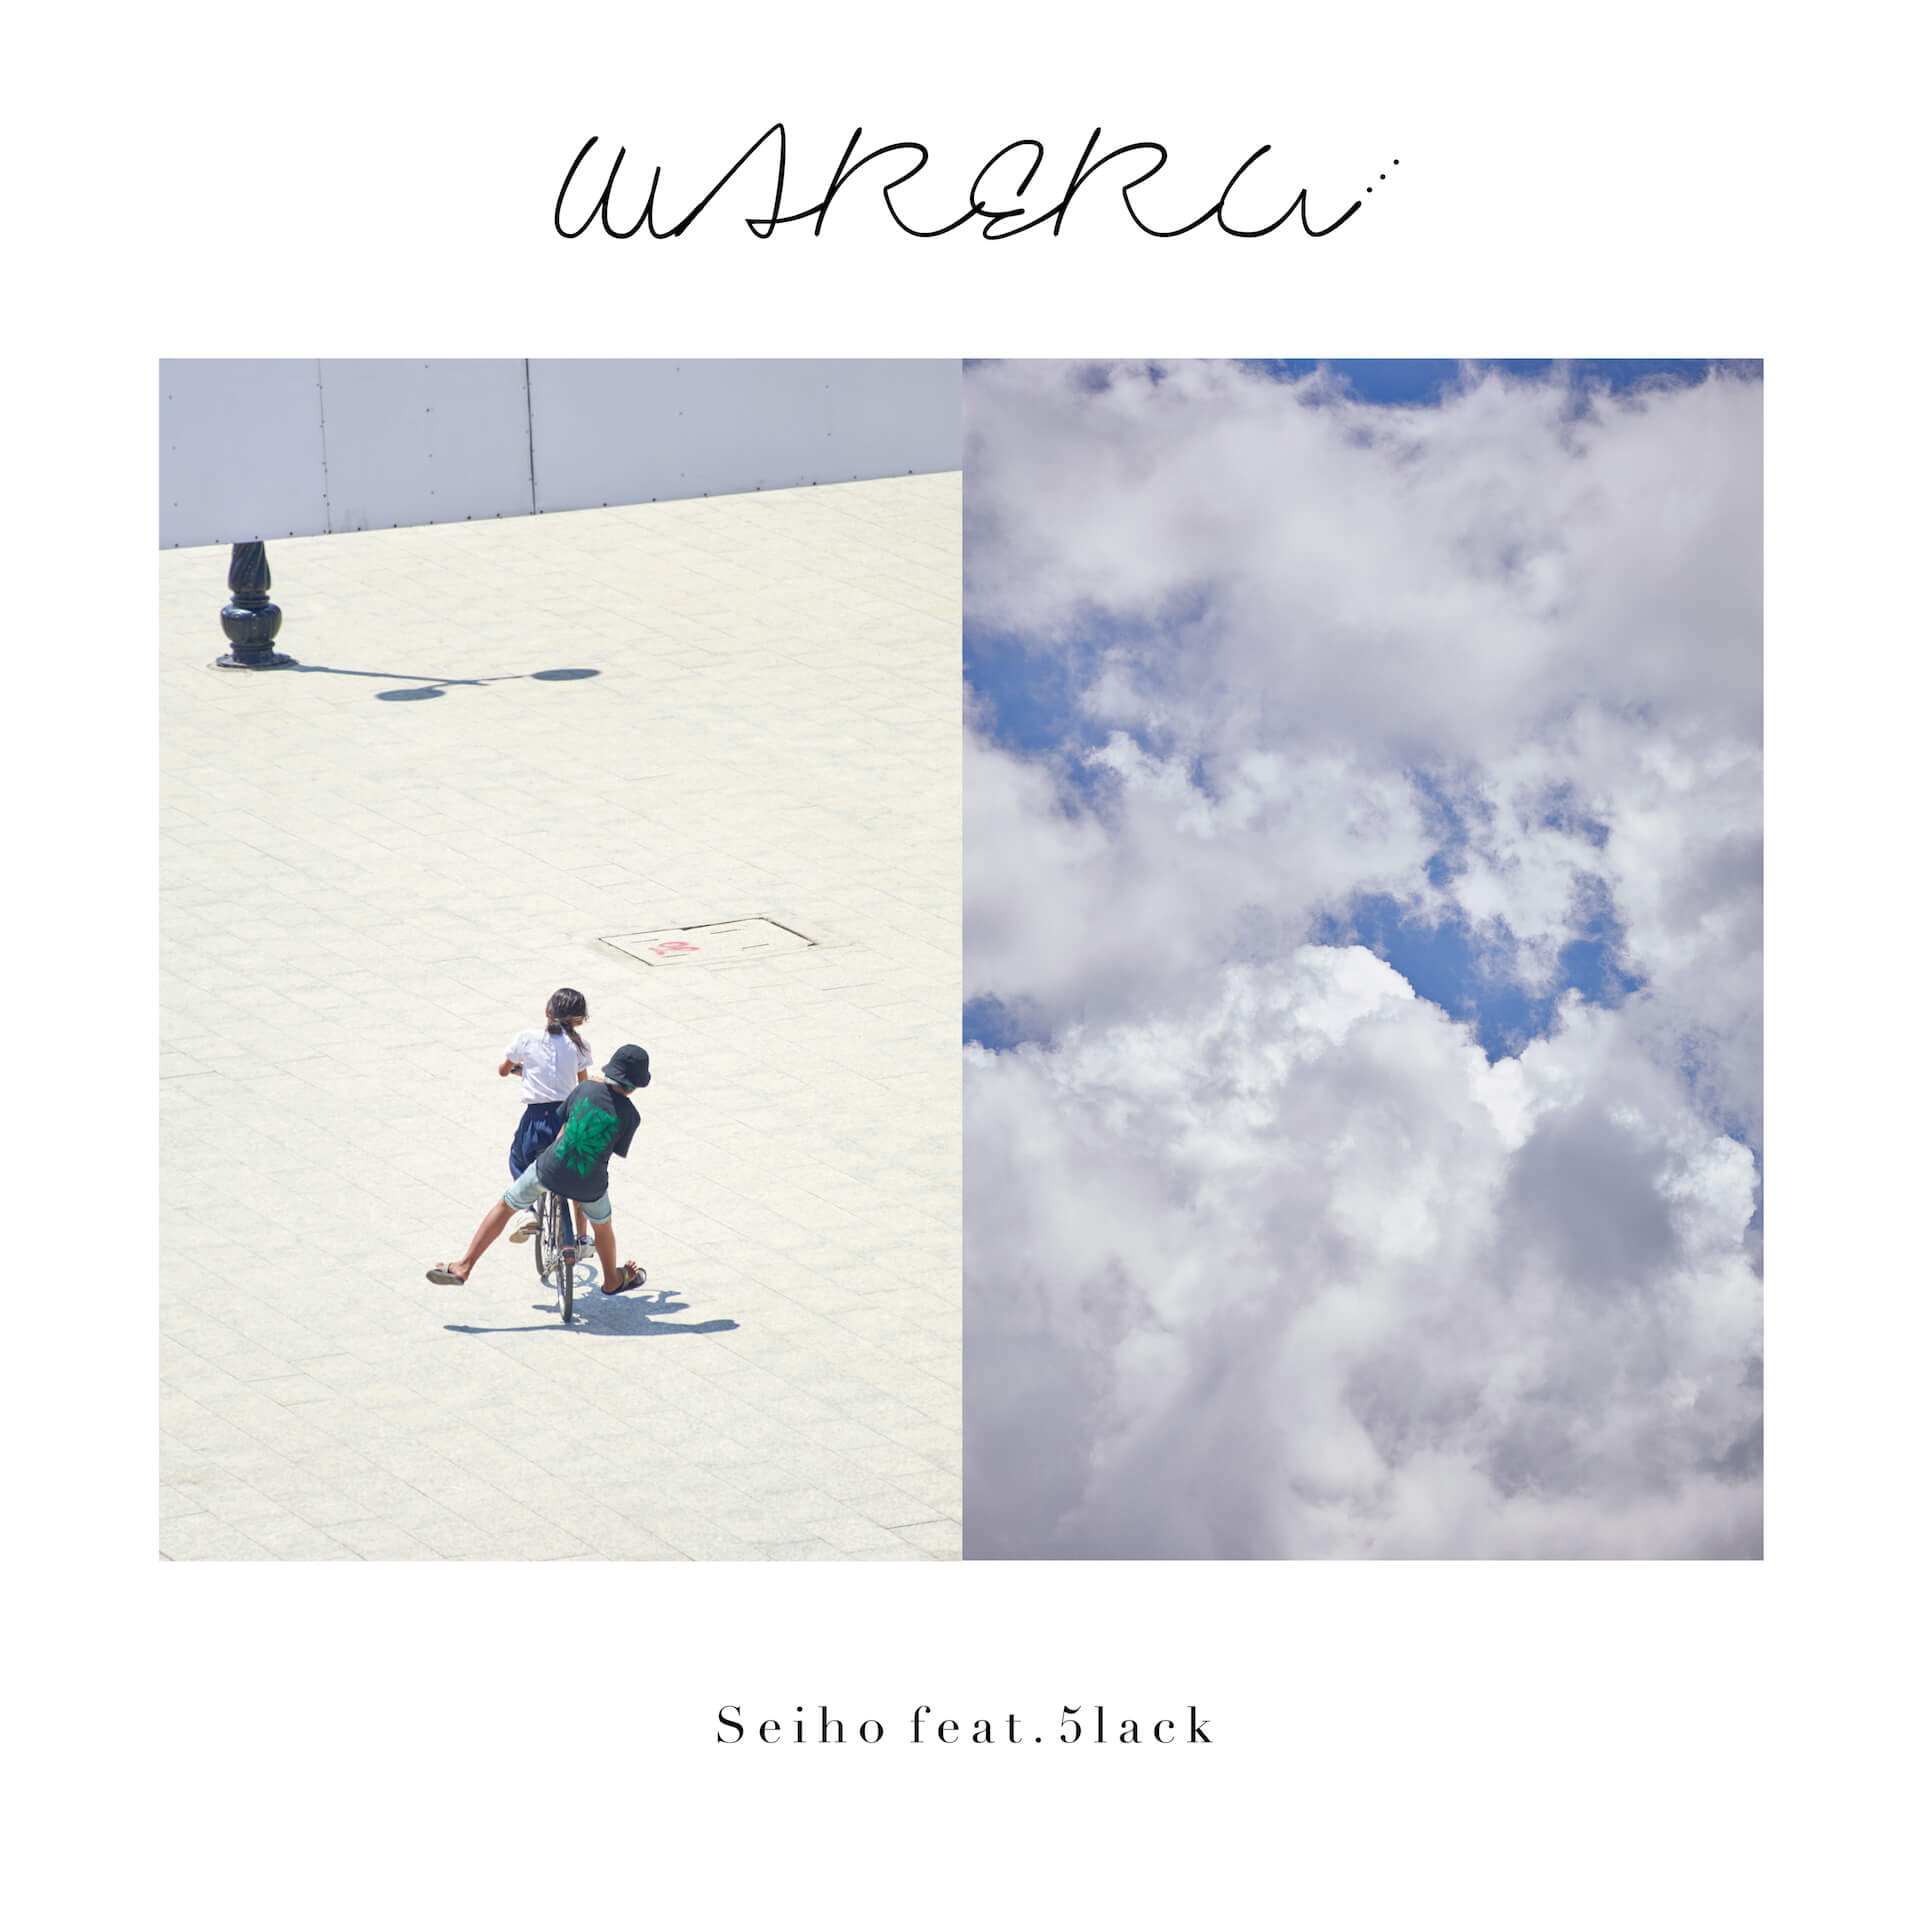 Seiho、5lackをゲストに迎えた最新シングル「Wareru feat. 5lack」をリリース music190830-seiho-5lack-3